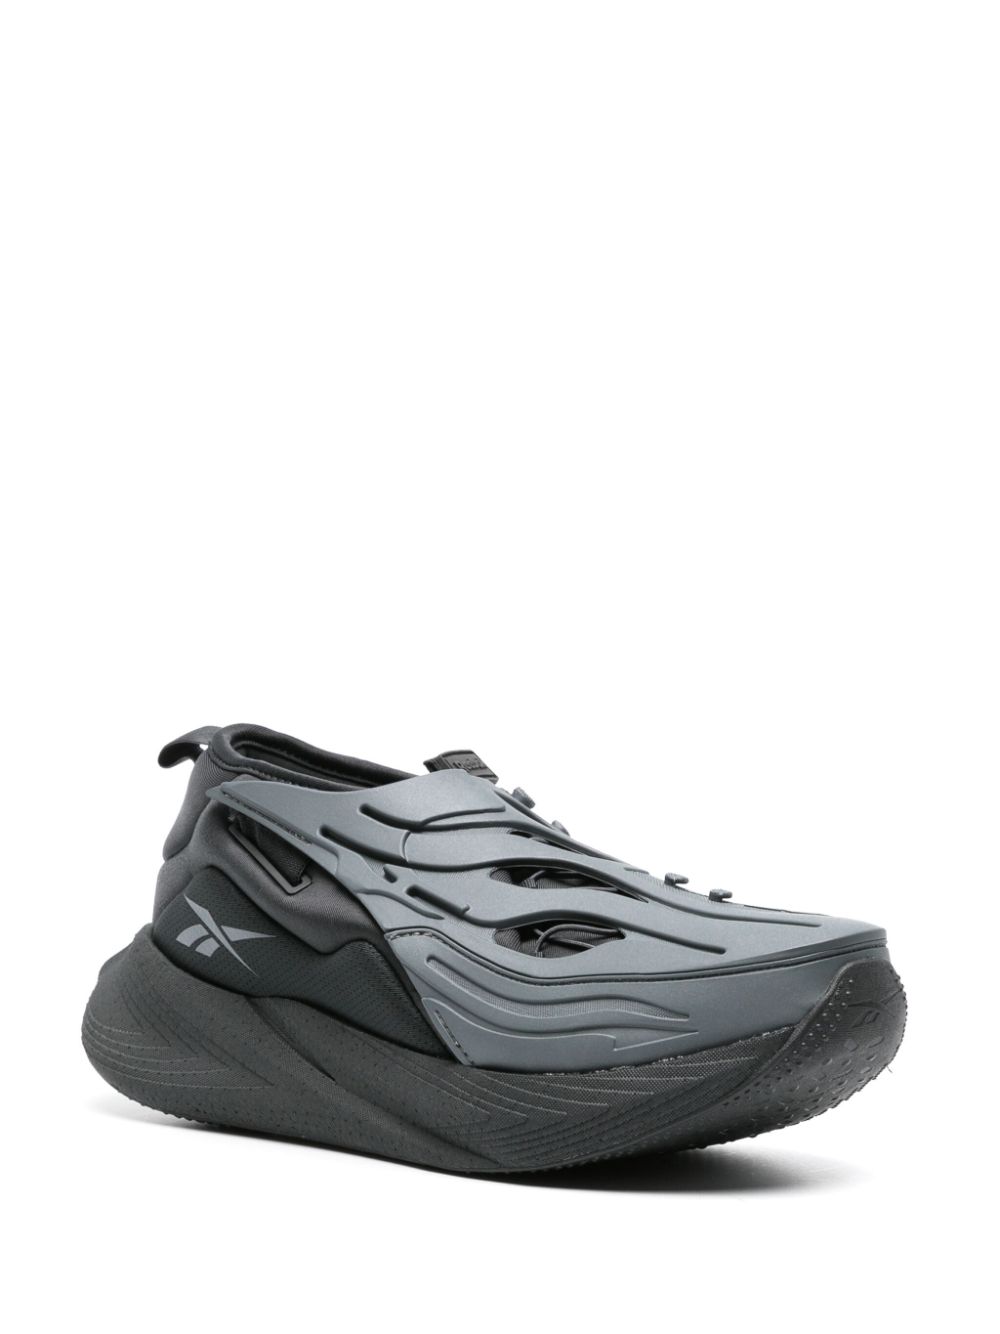 Reebok Floatride Energy Shield System schoenen - Zwart